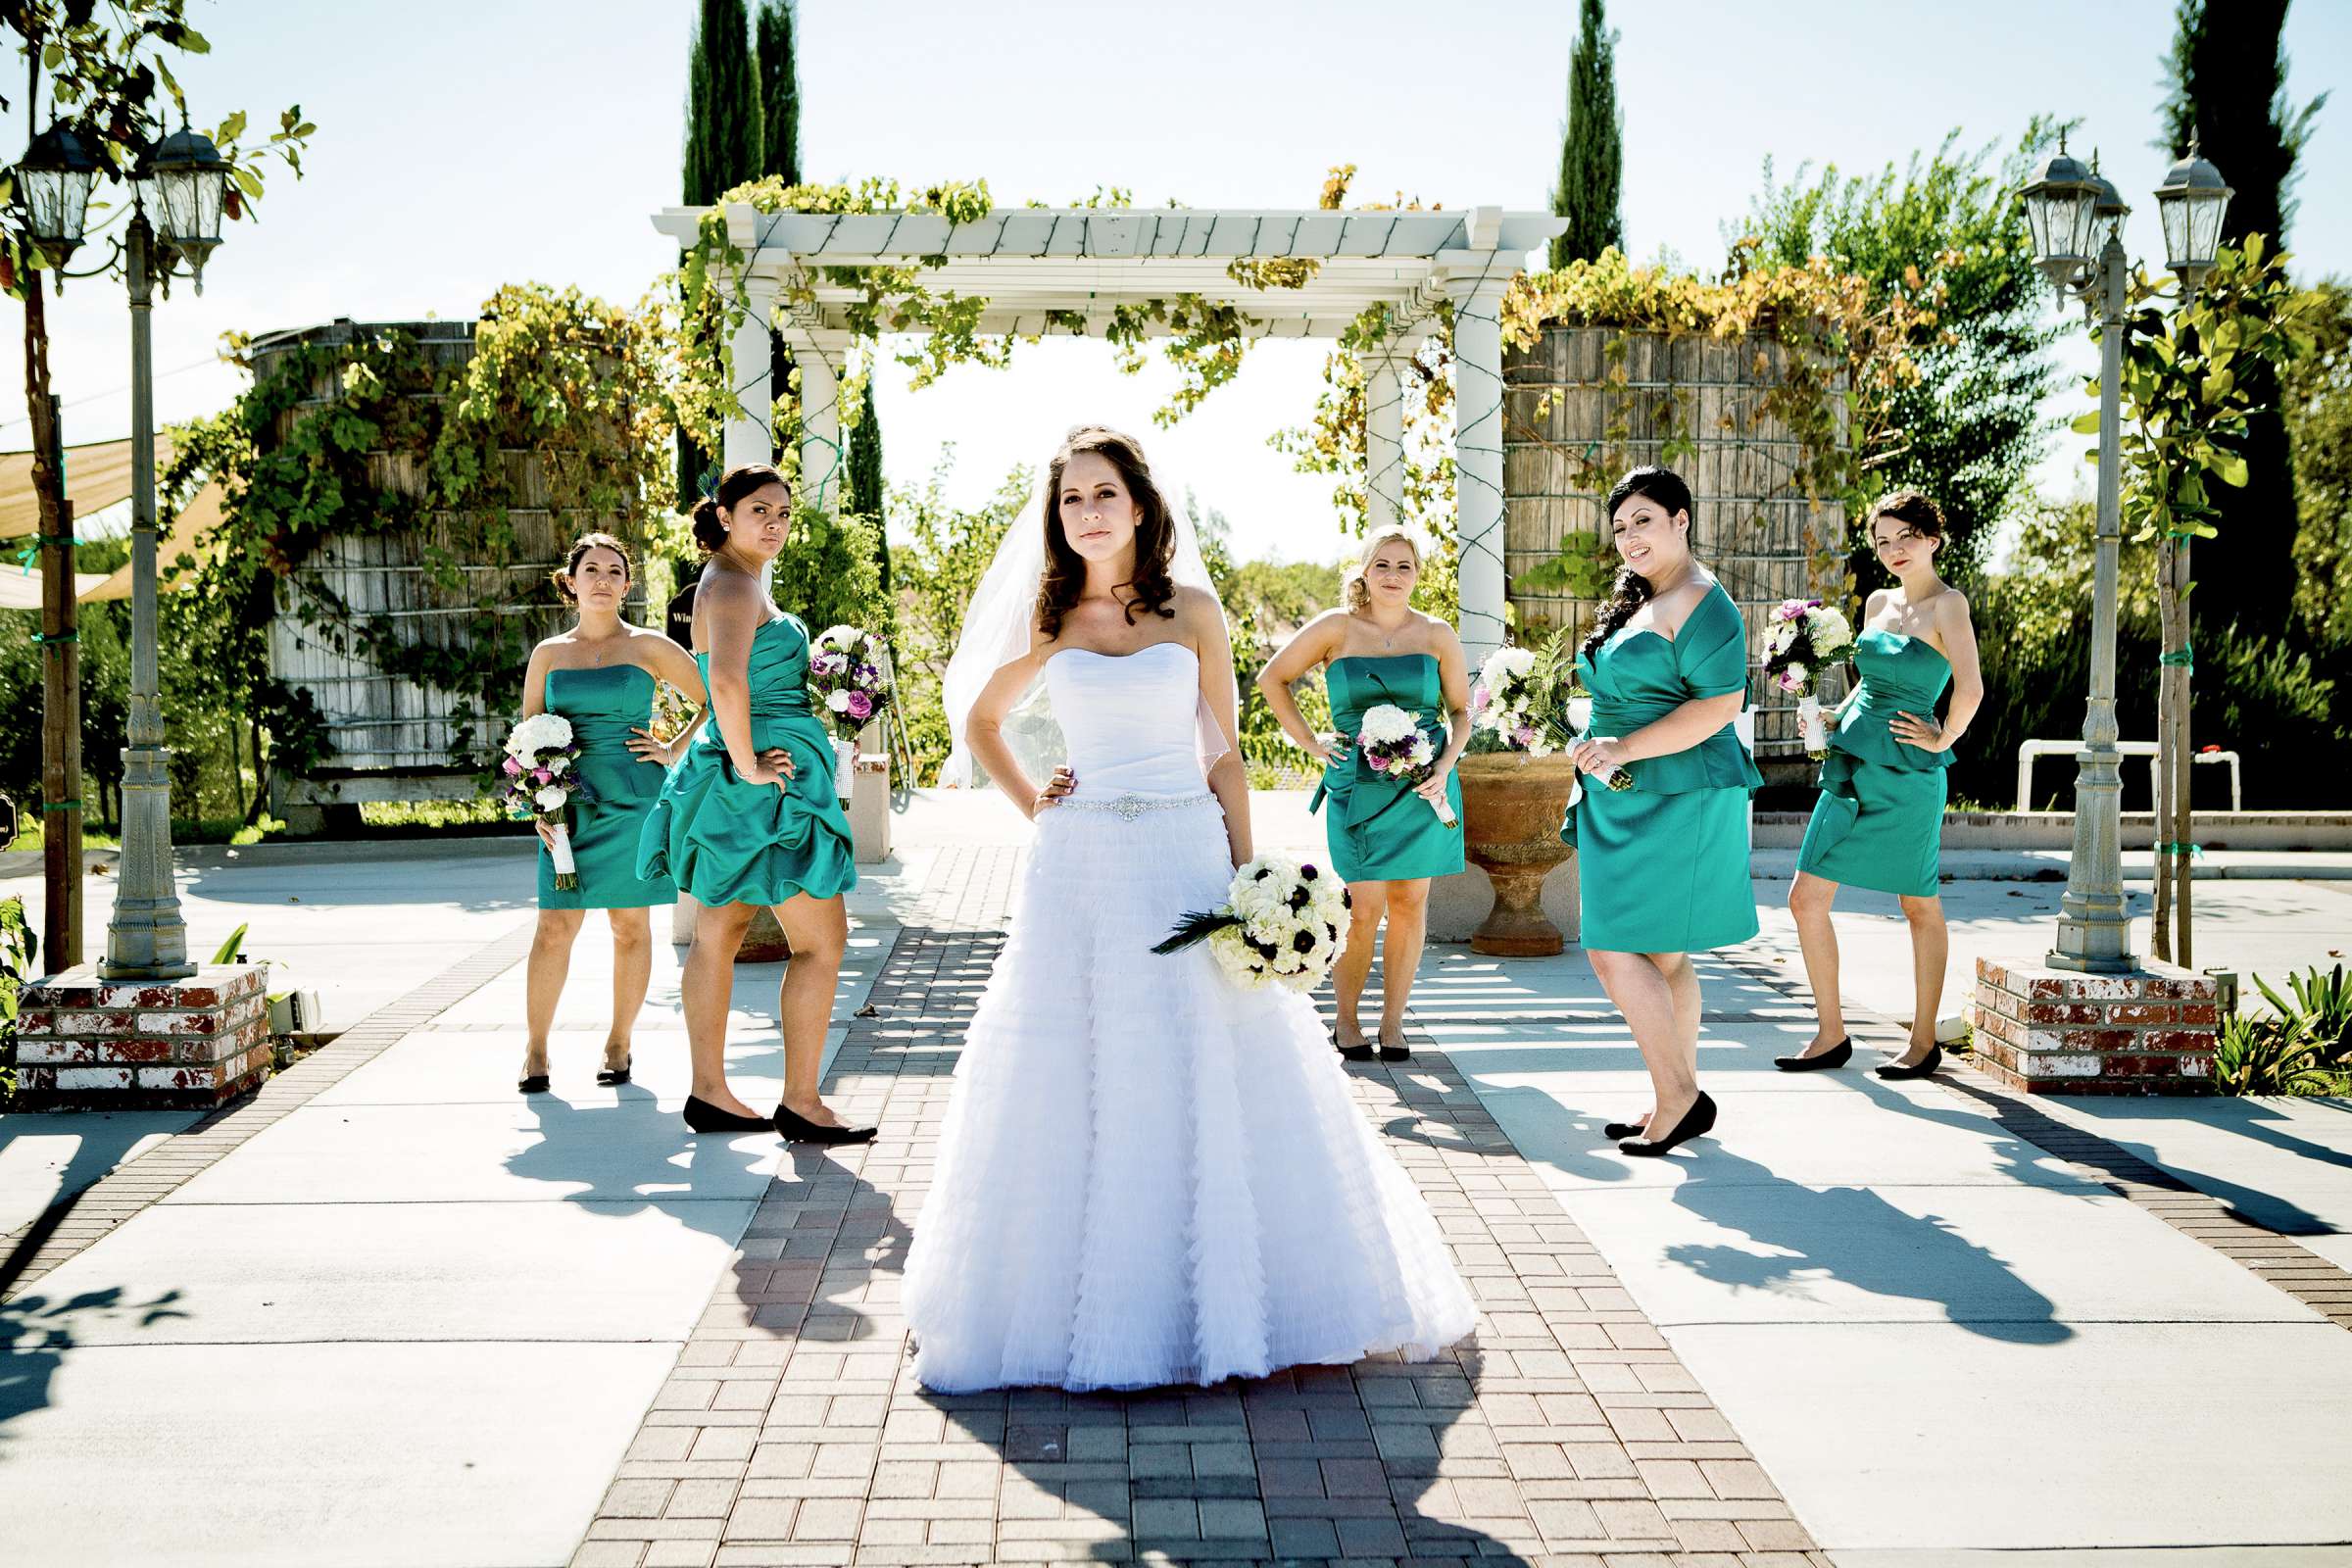 Mount Palomar Winery Wedding, Brandi and Jason Wedding Photo #321631 by True Photography